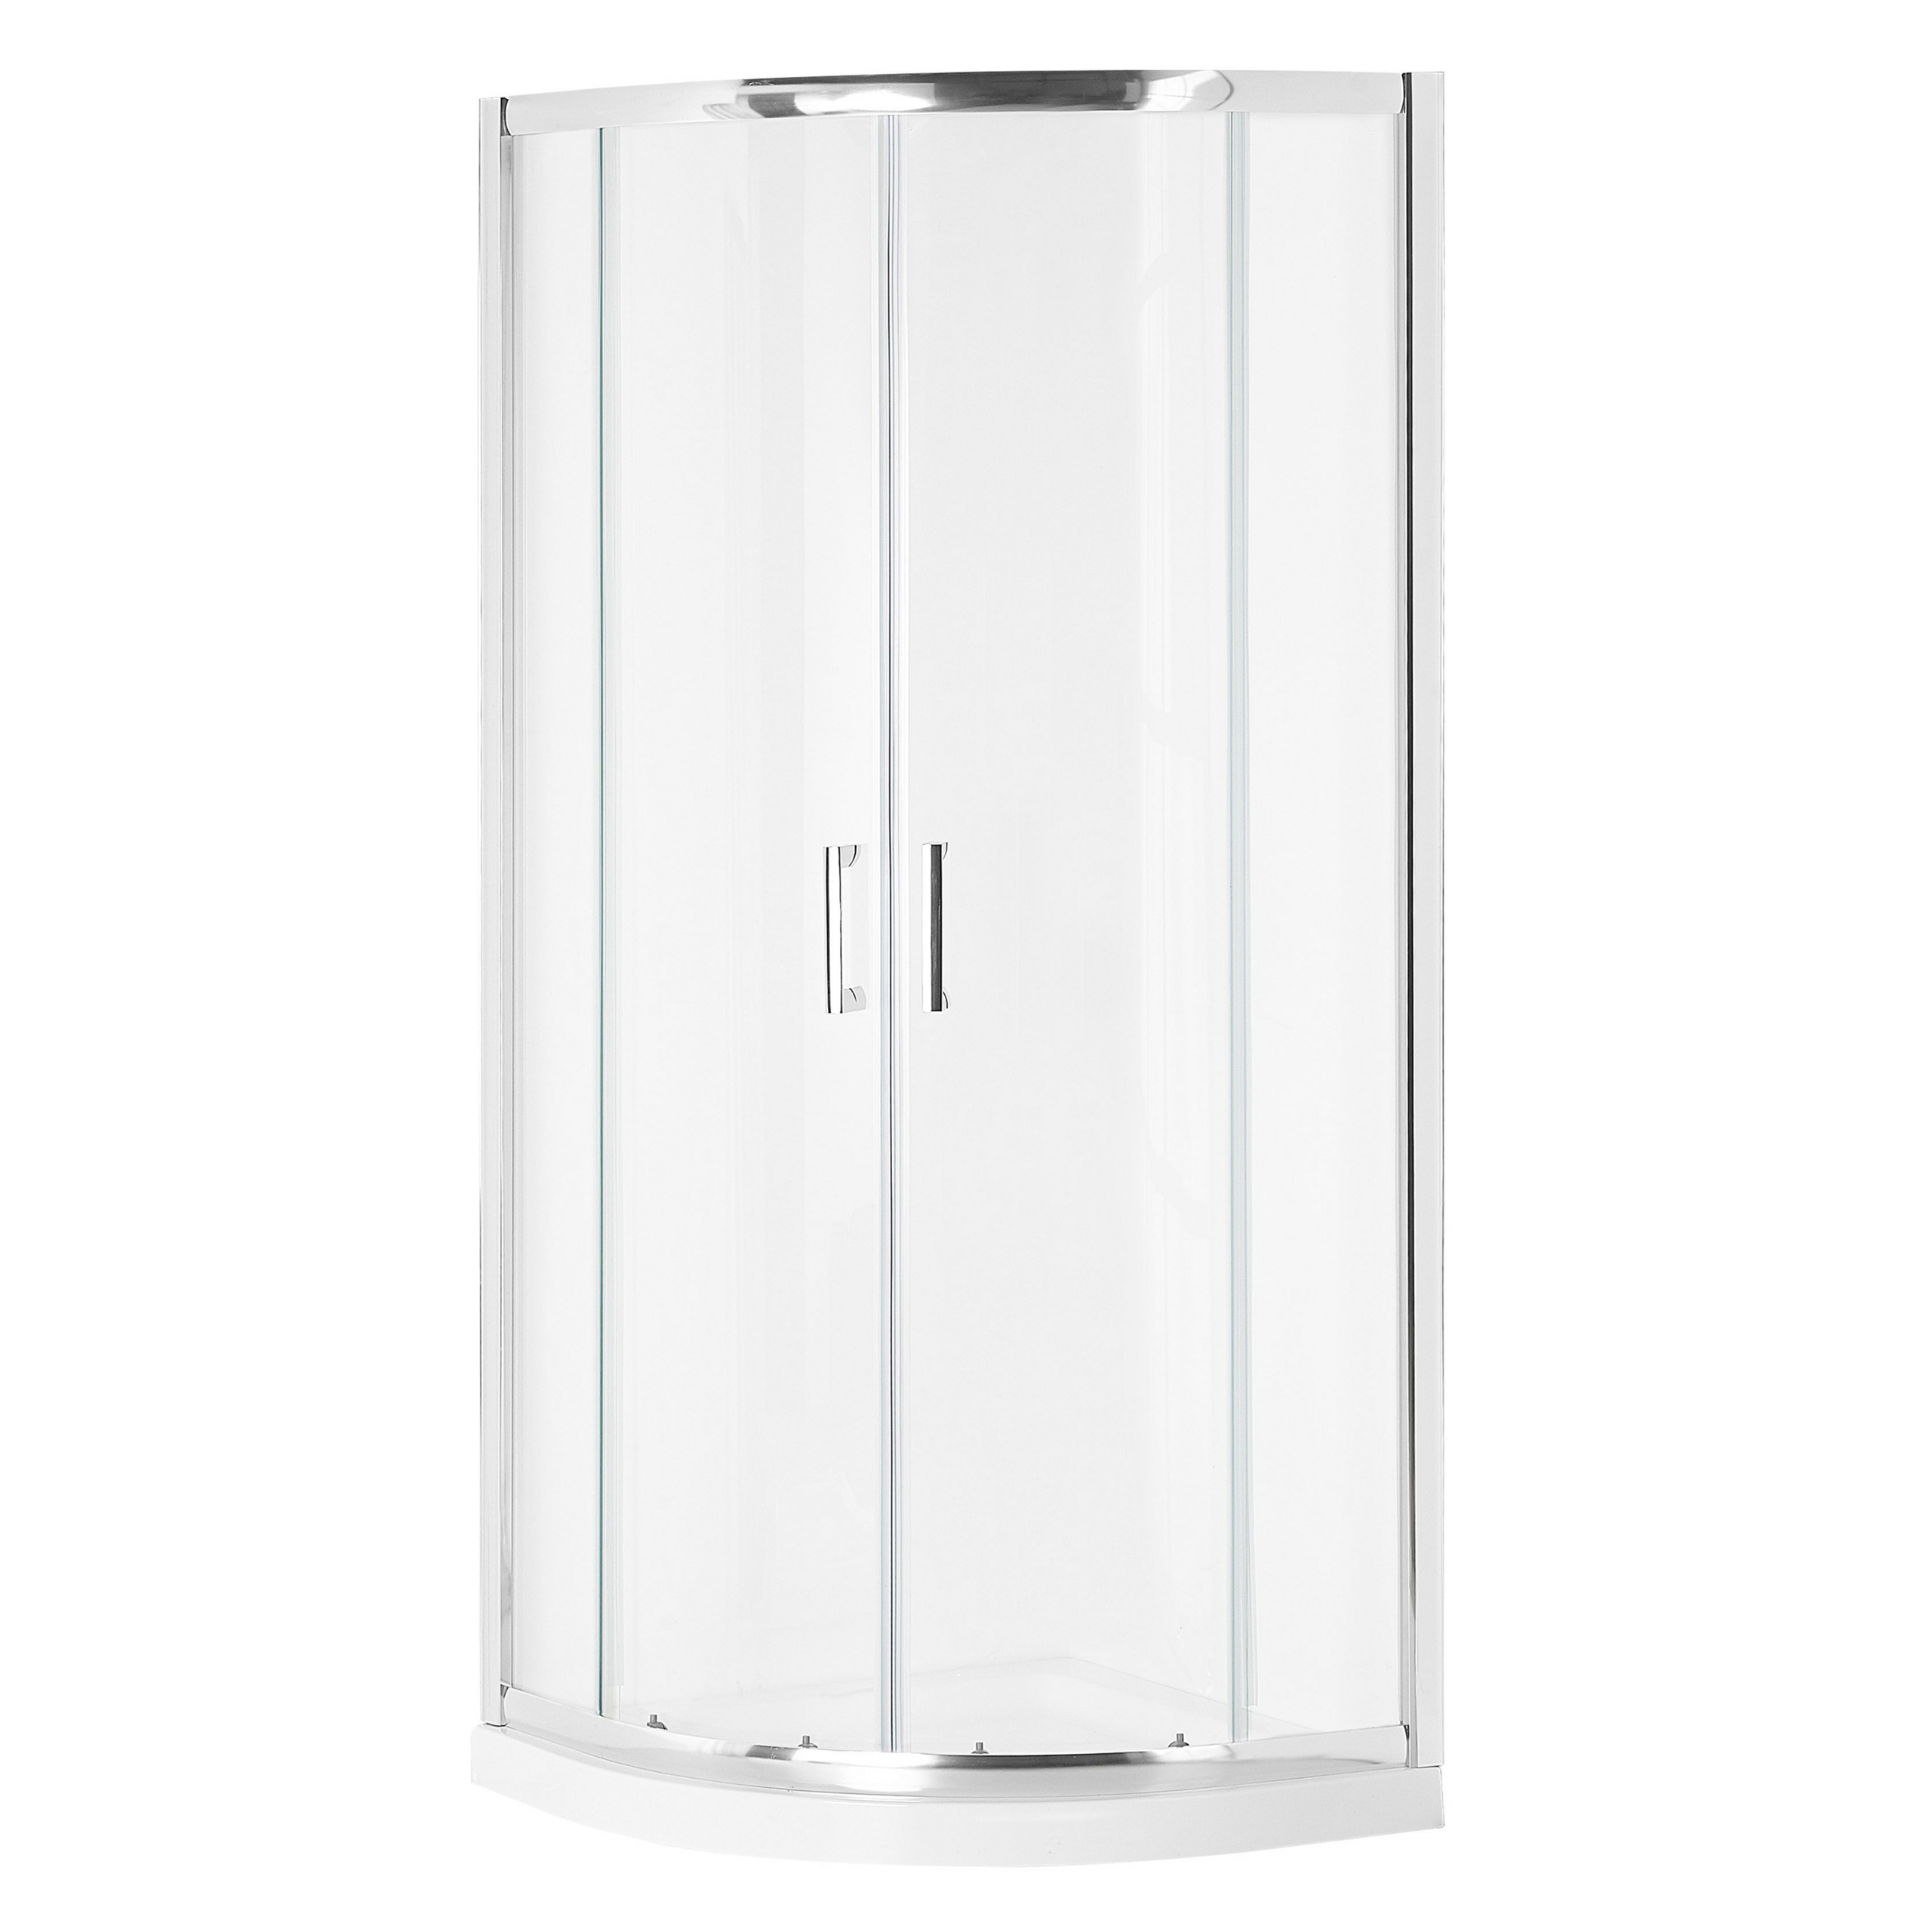 Beliani Chuveiro vidro temperado prateado moldura de alumínio porta dupla arredondada 80 x 80 x 185 cm design moderno